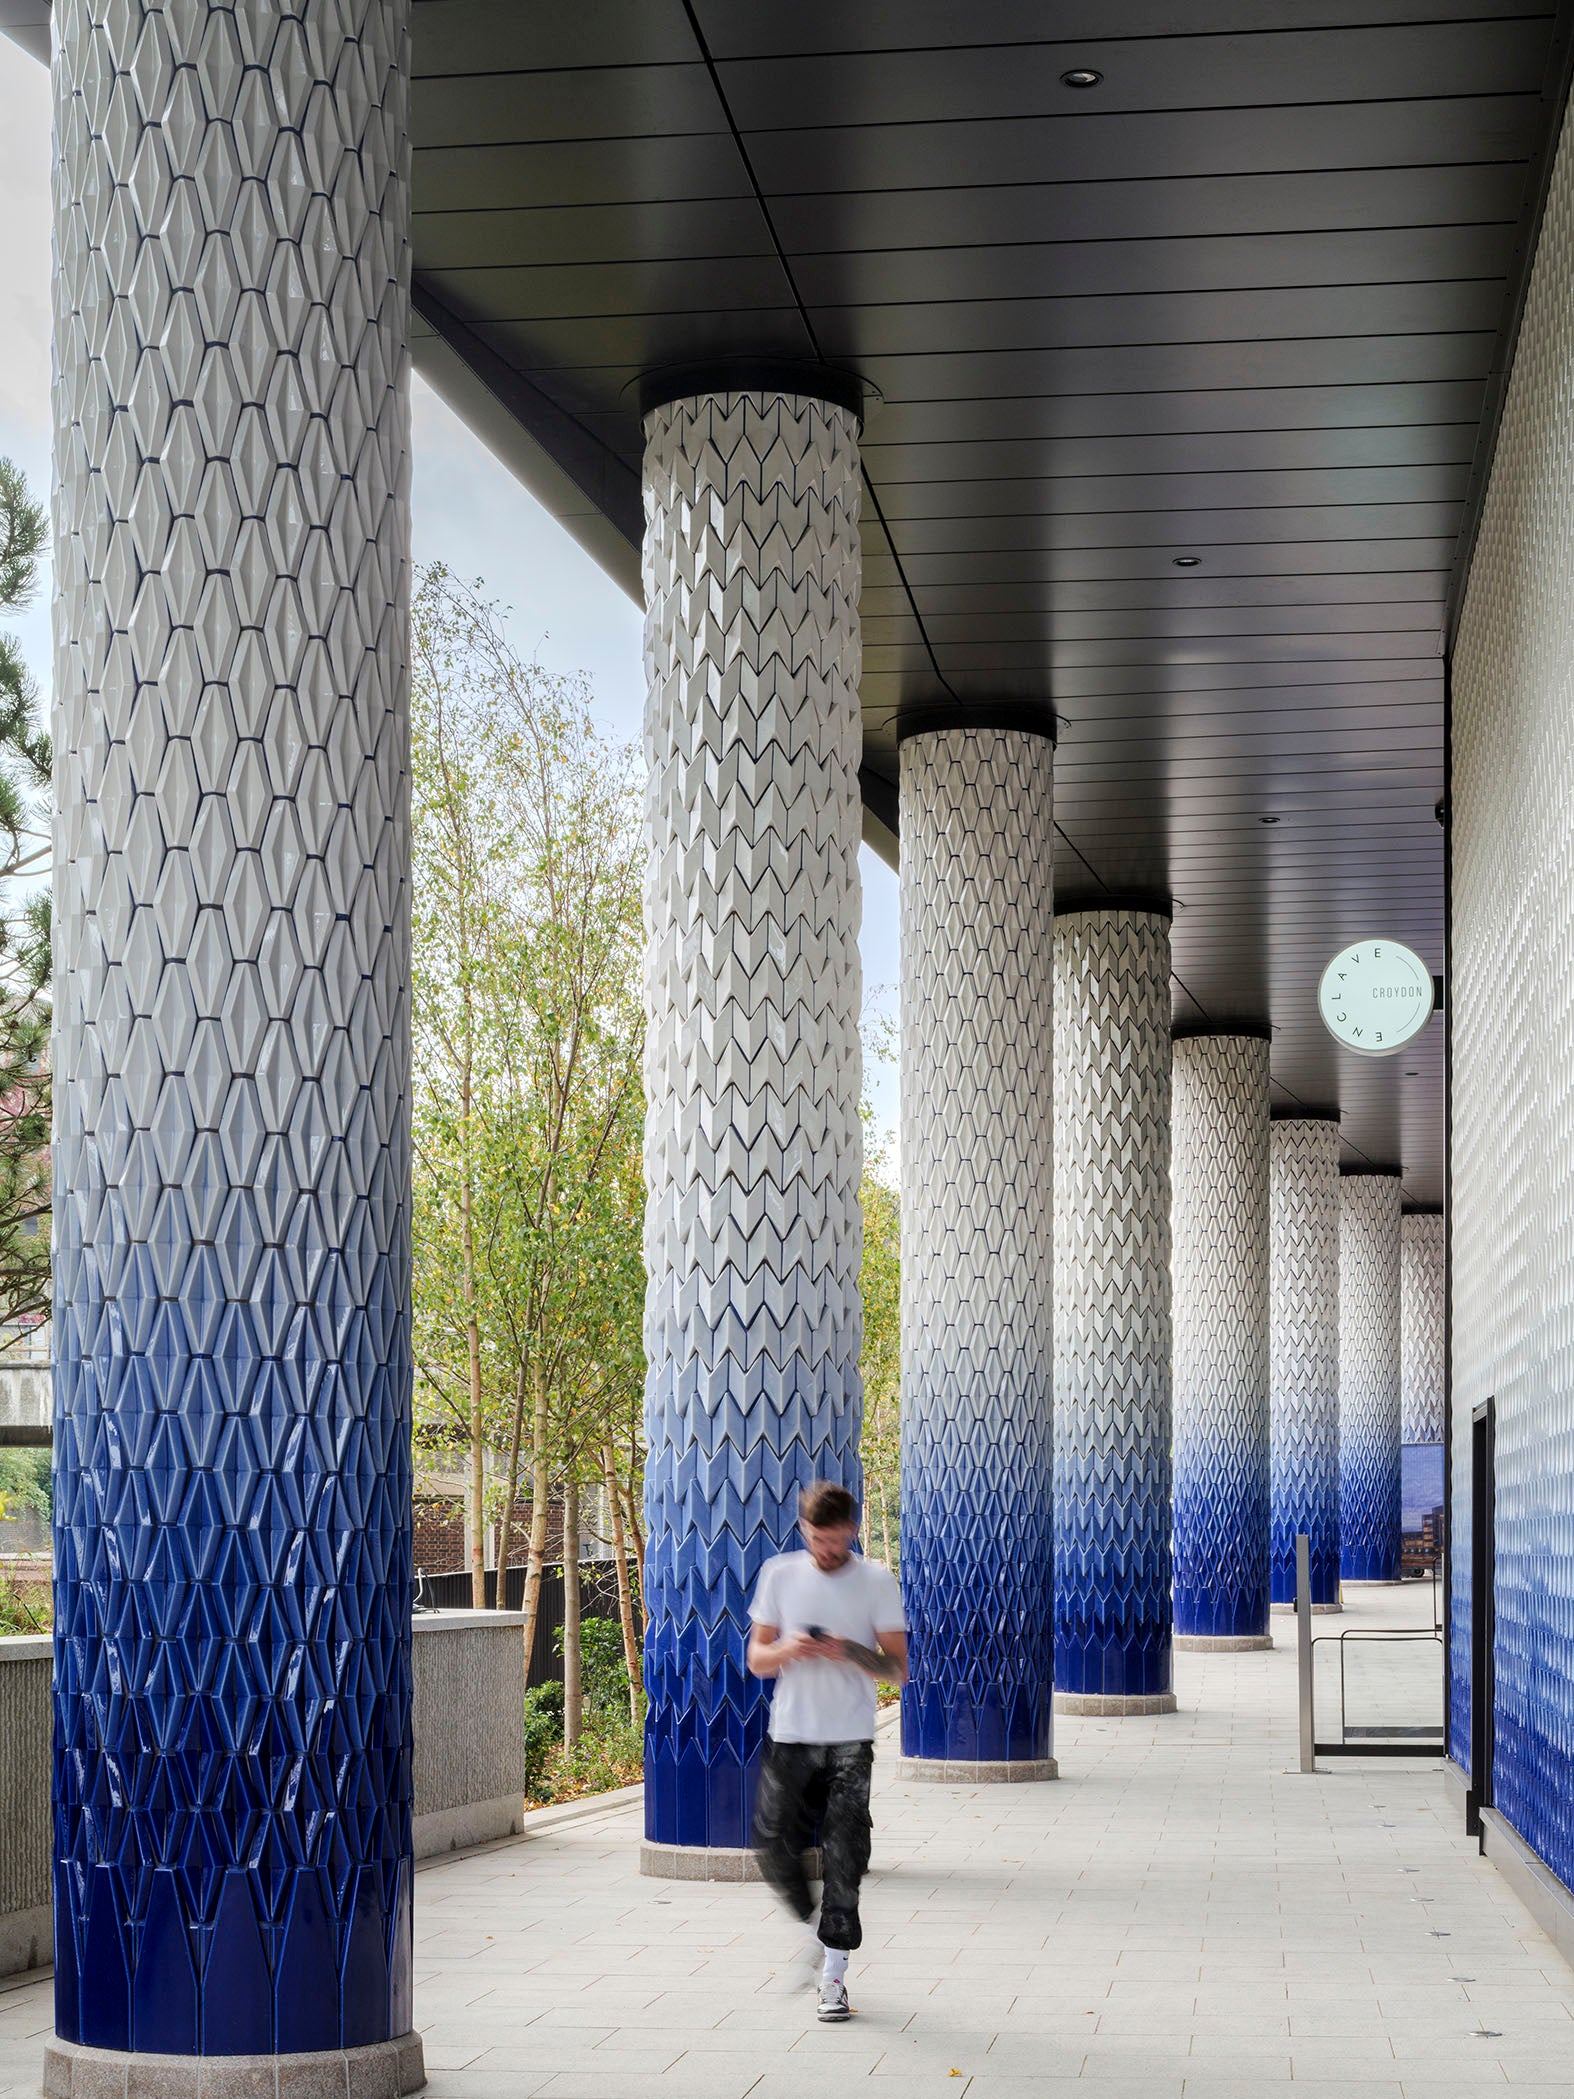 Croydon Colonnade, porcelain public architecture by Adam Nathaniel Furman